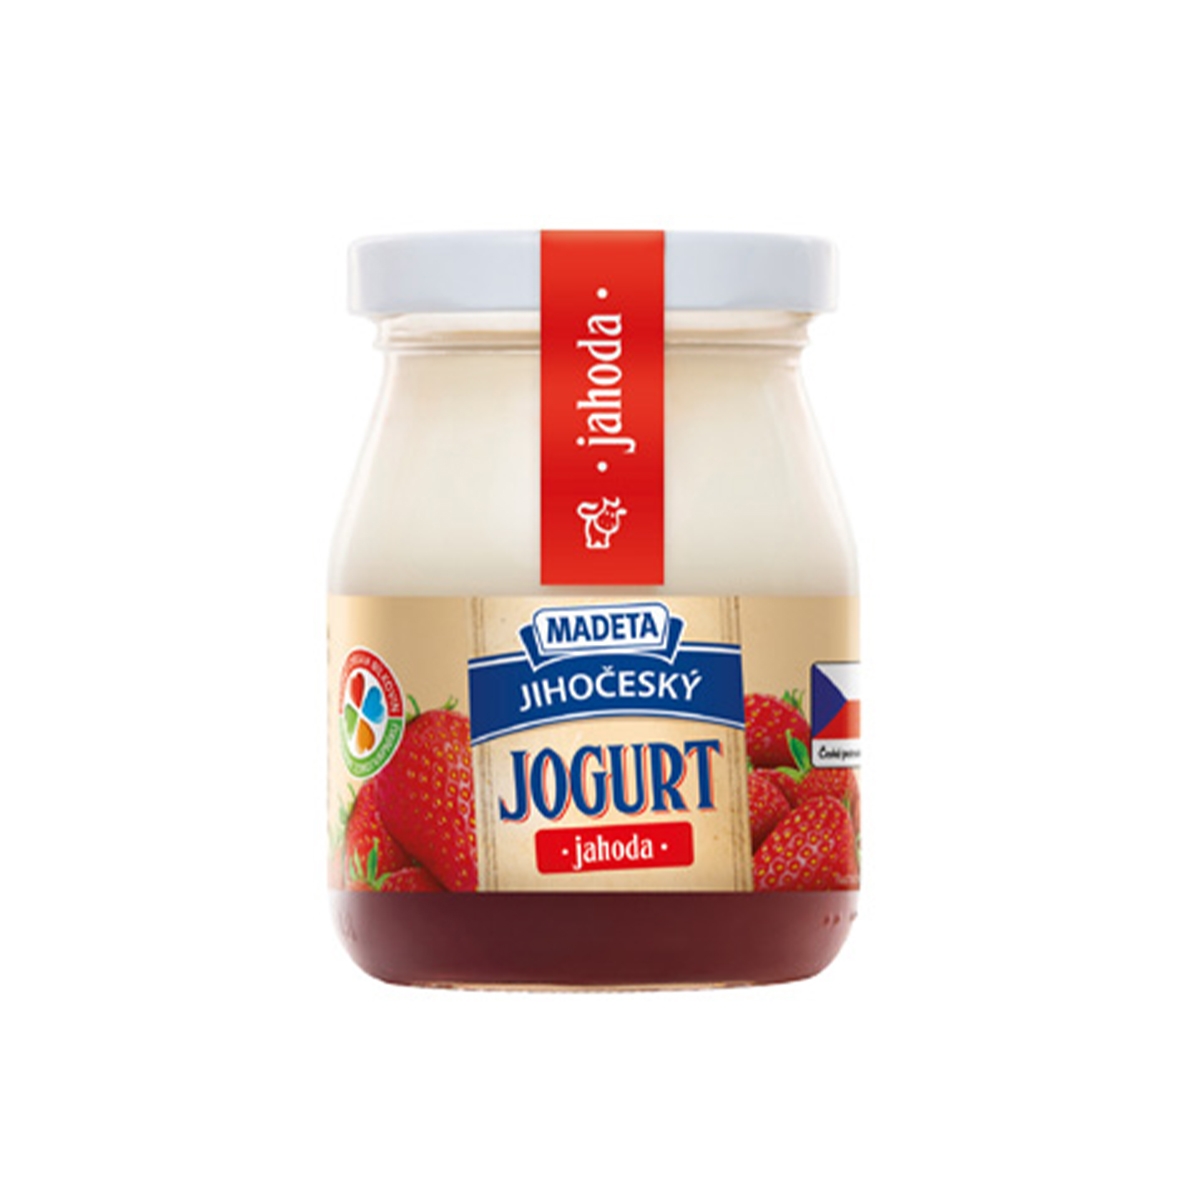 Jihočeský tradiční jogurt jahoda 200 g